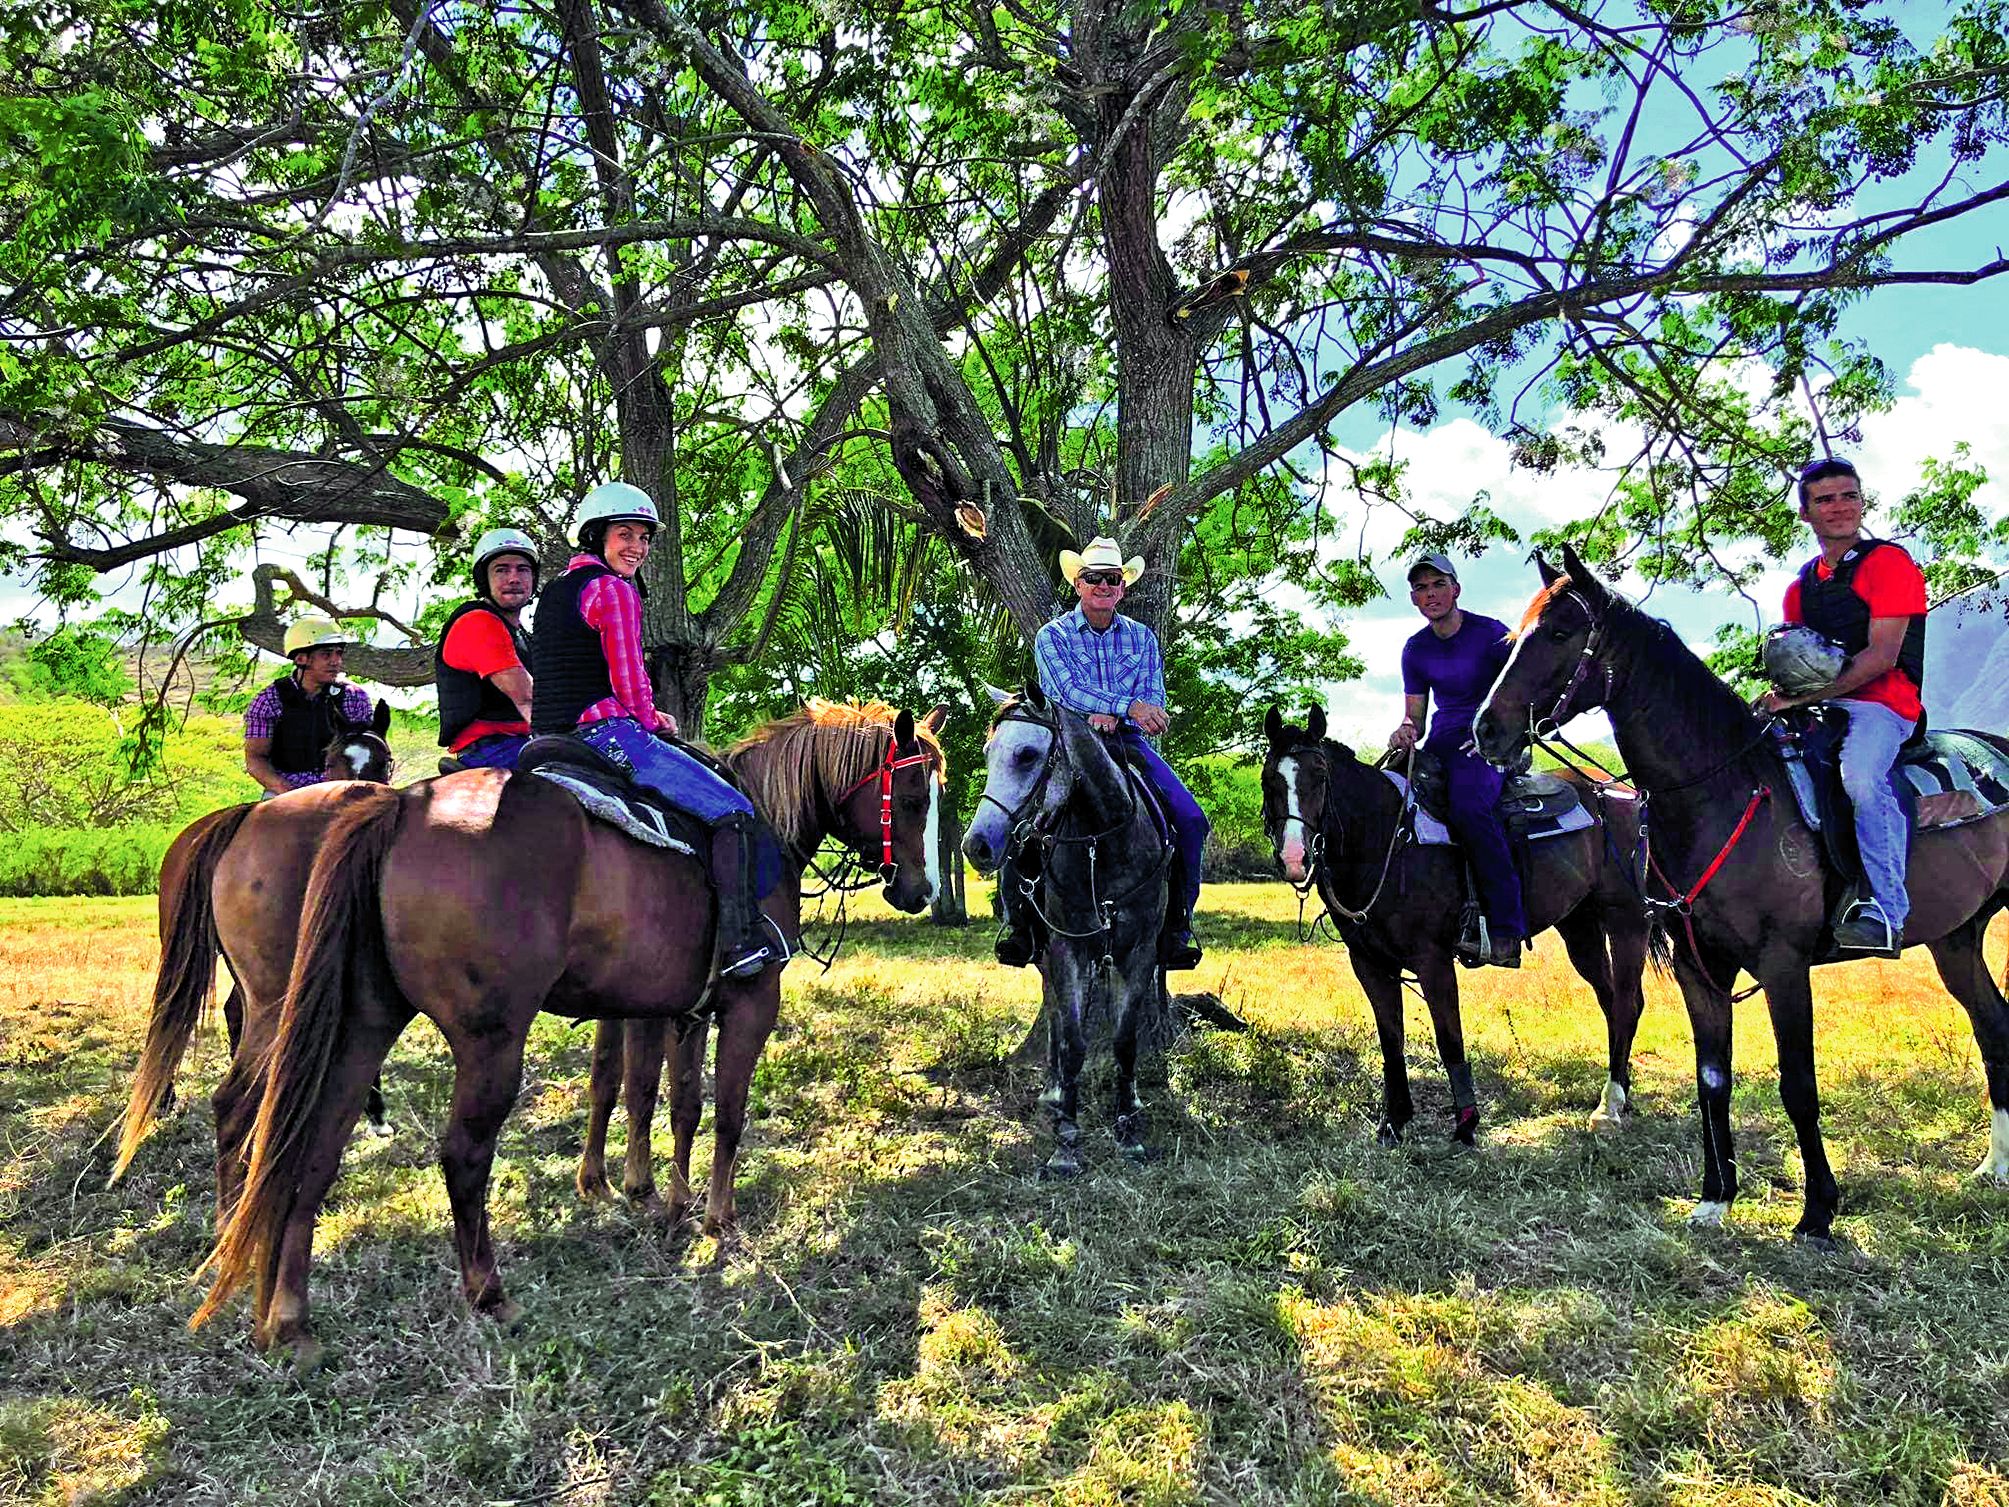 Une journée sportive ou de détente consacrée au cheval, sur la propriété Debien à Témala  a procuré beaucoup de bonheur aux participants, qu’ils soient débutants, amateurs  ou confirmés.